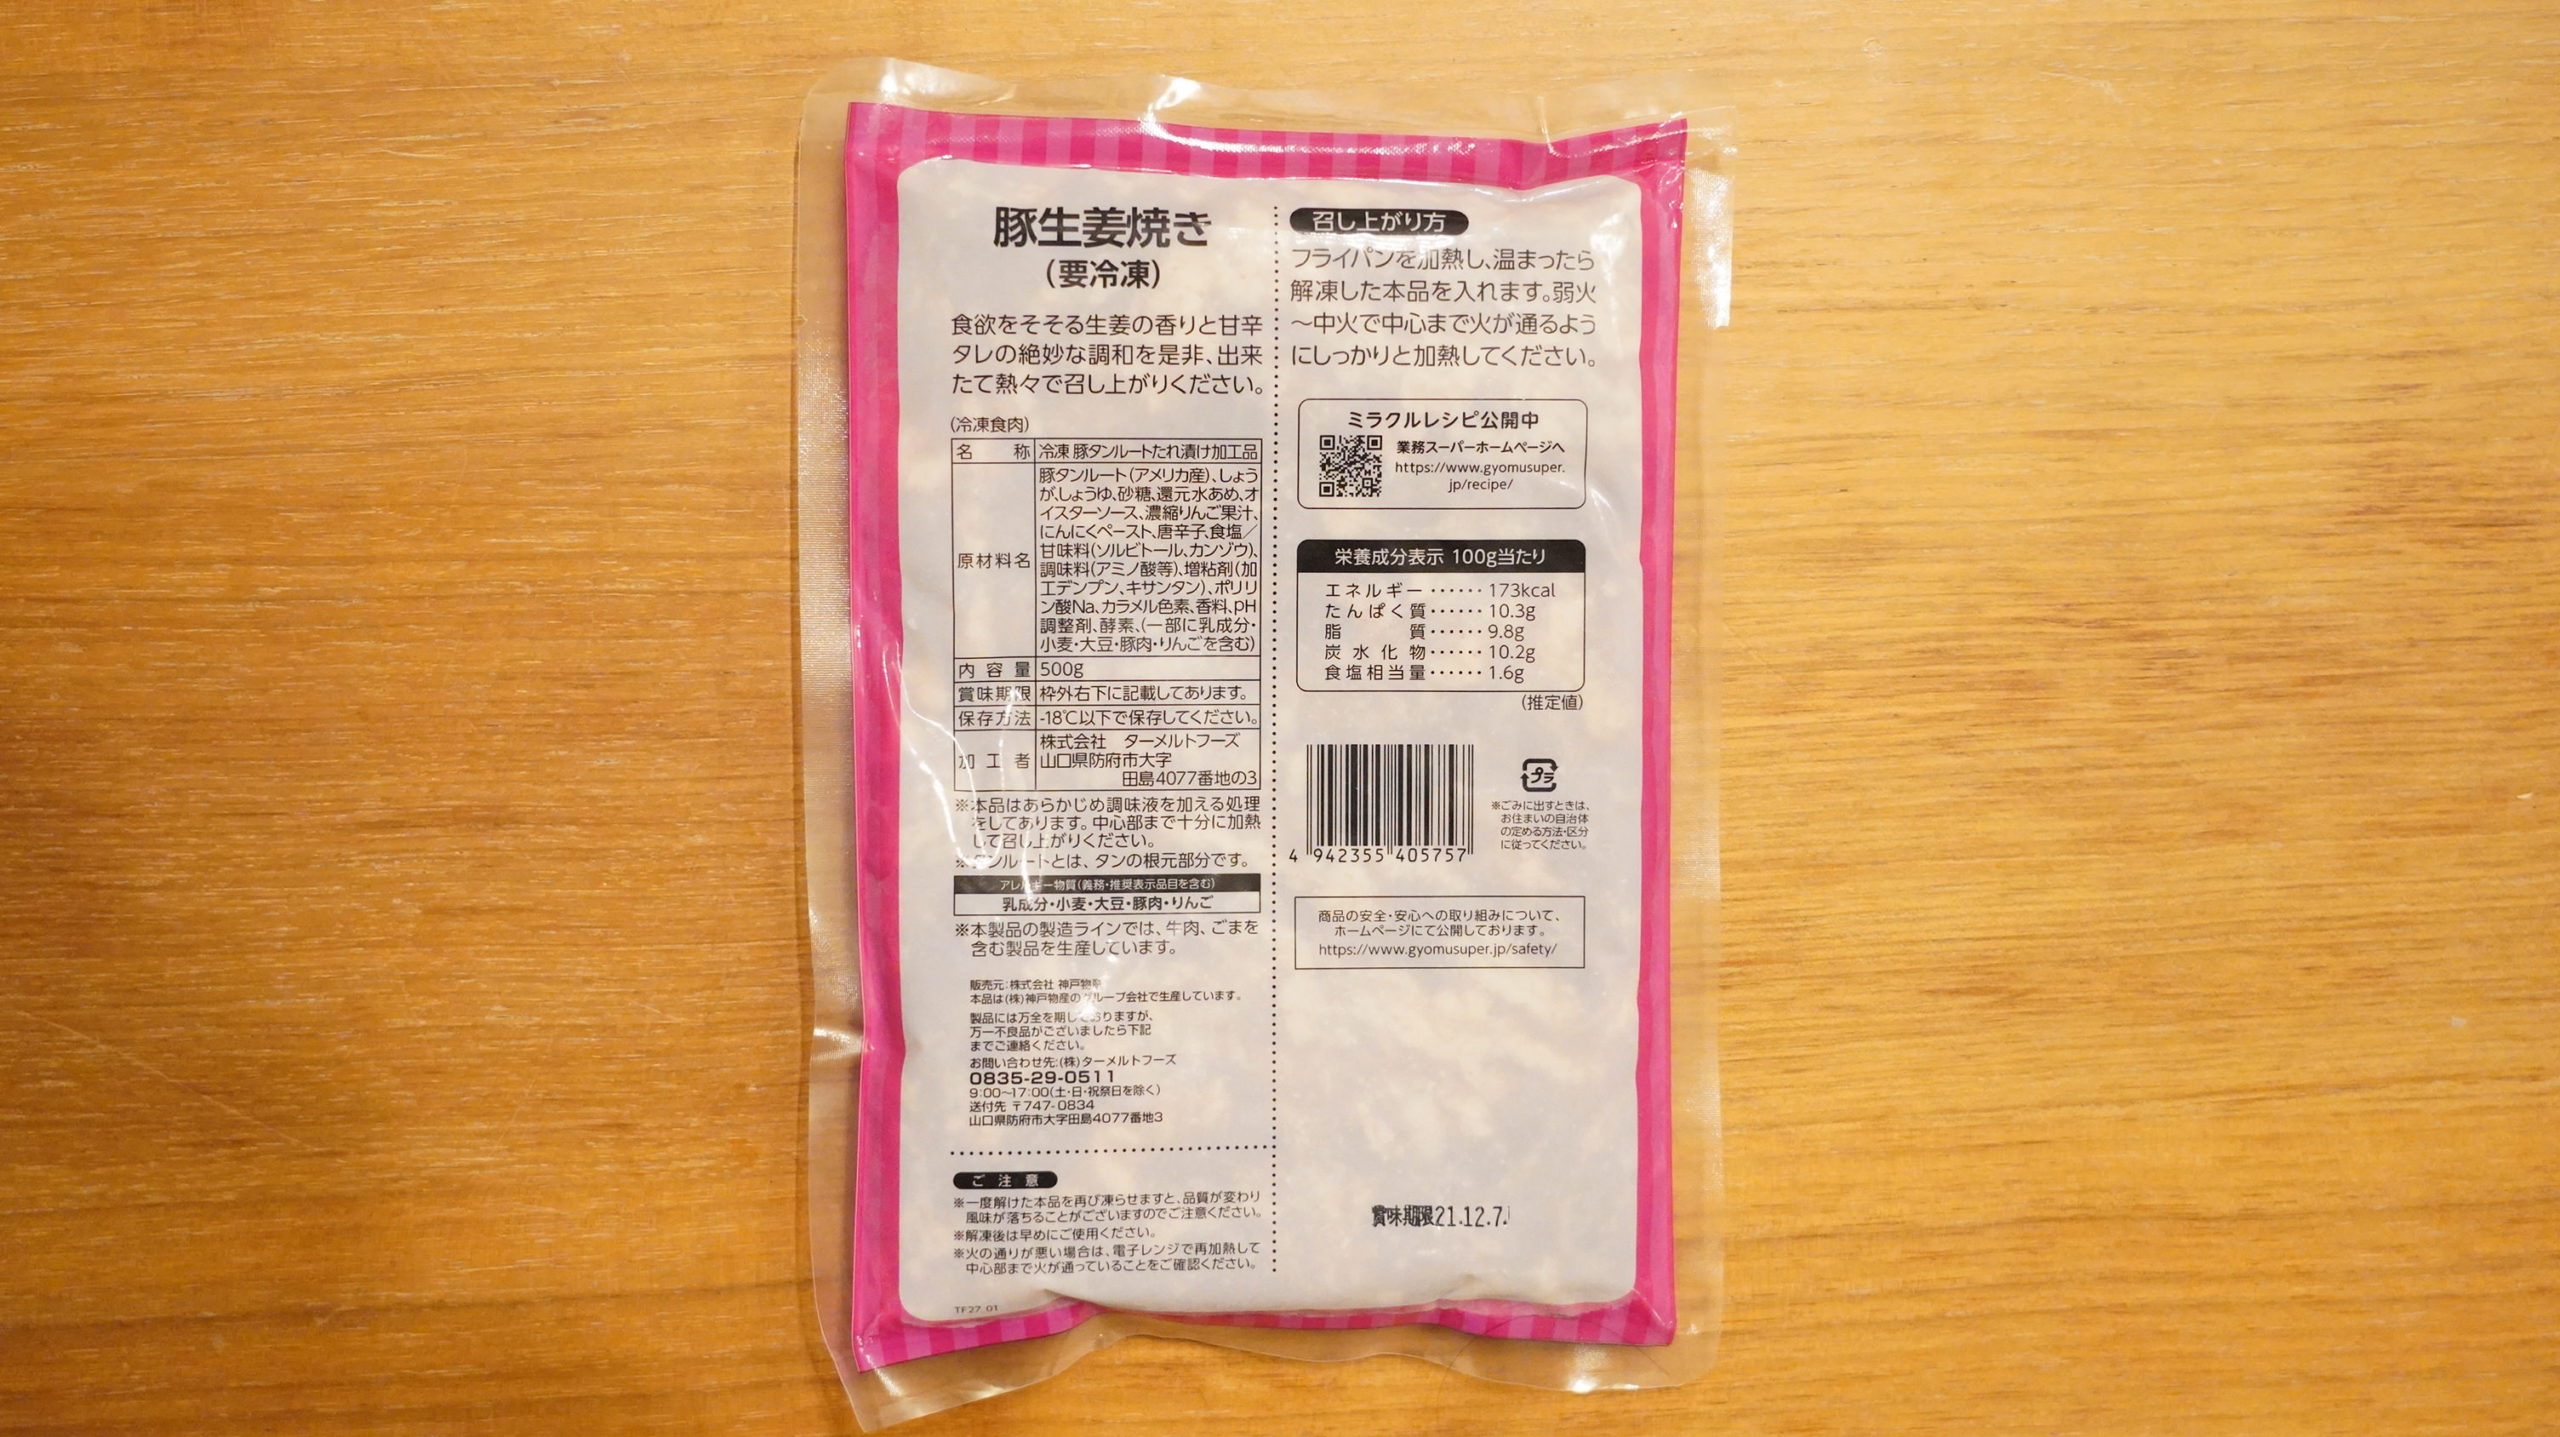 業務スーパーの冷凍食品「豚生姜焼き」のパッケージの裏面の写真